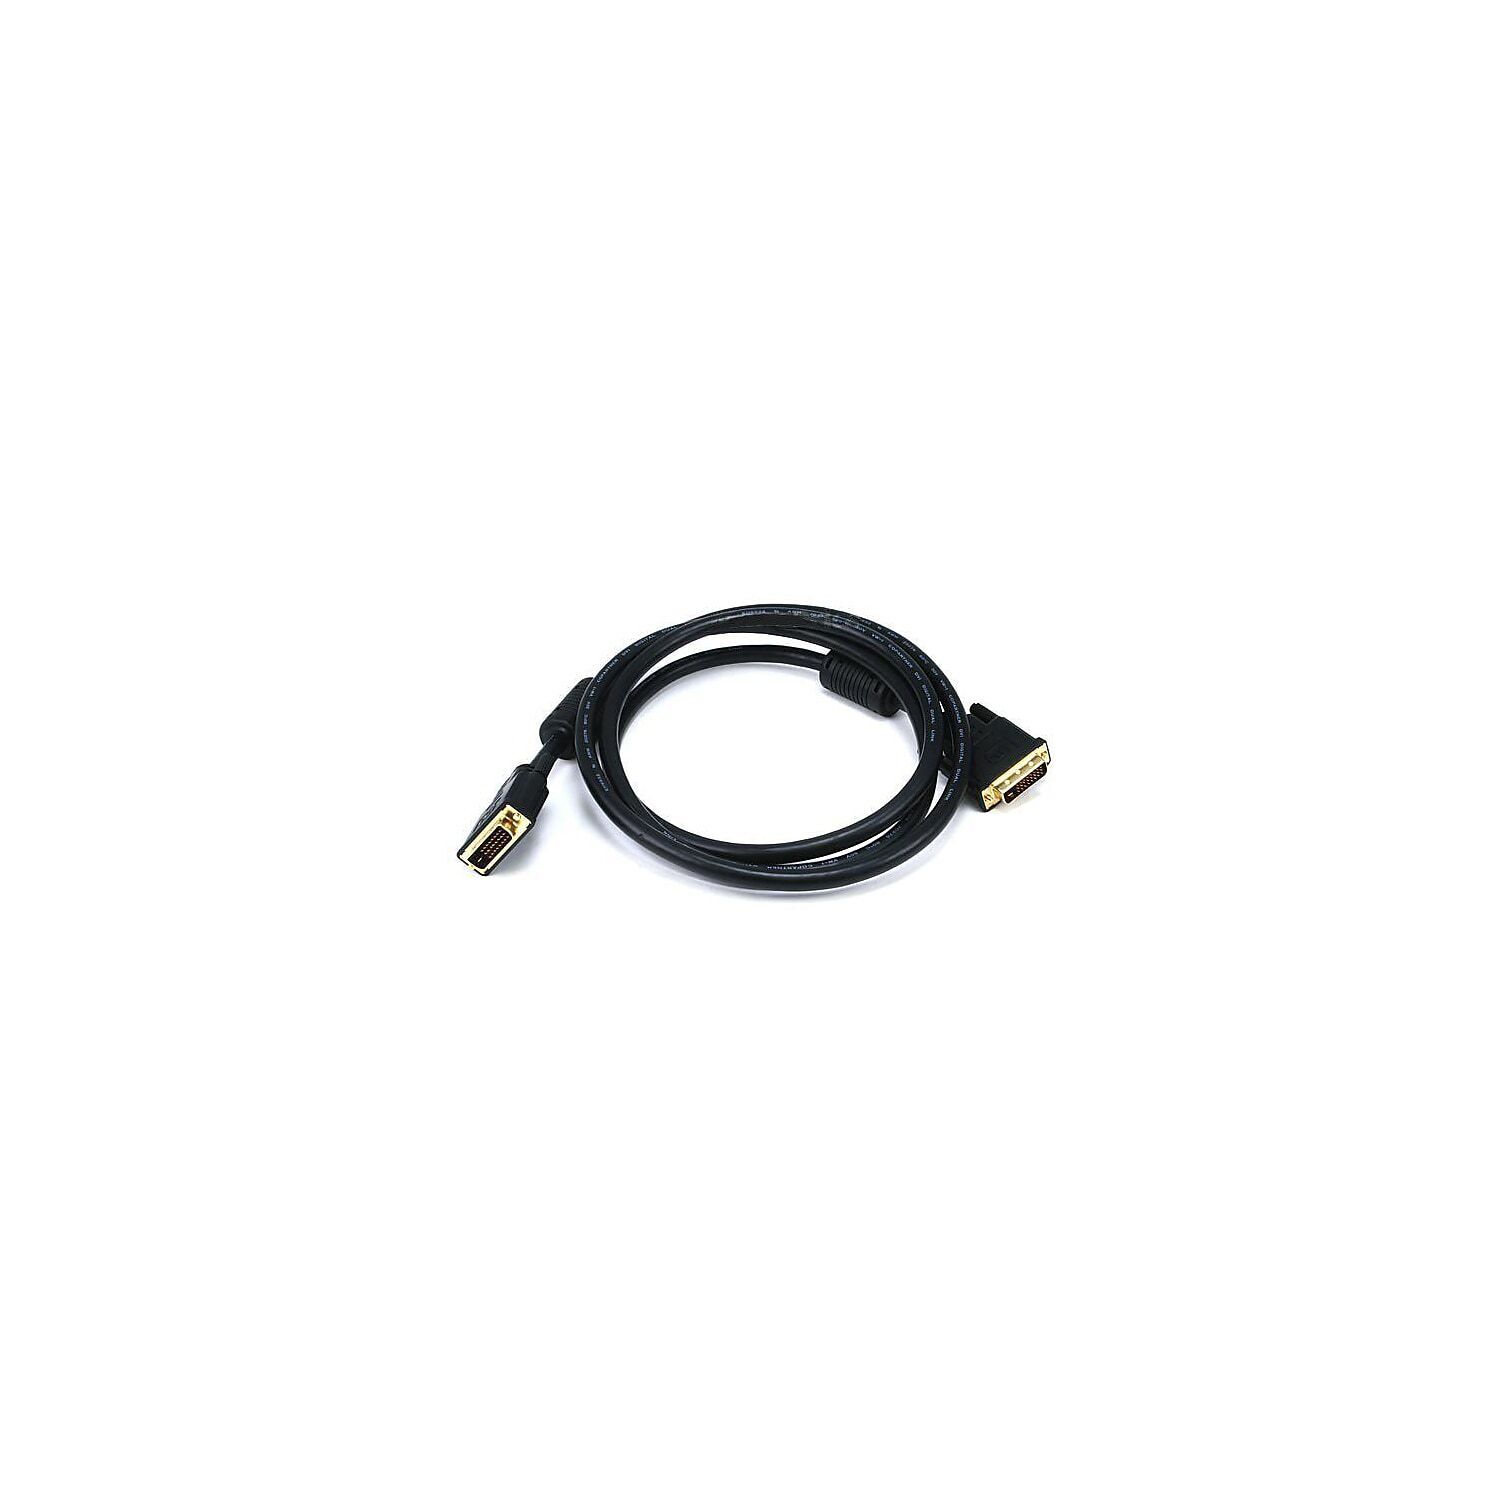 Monoprice 102408 6' DVI-D Cable Black